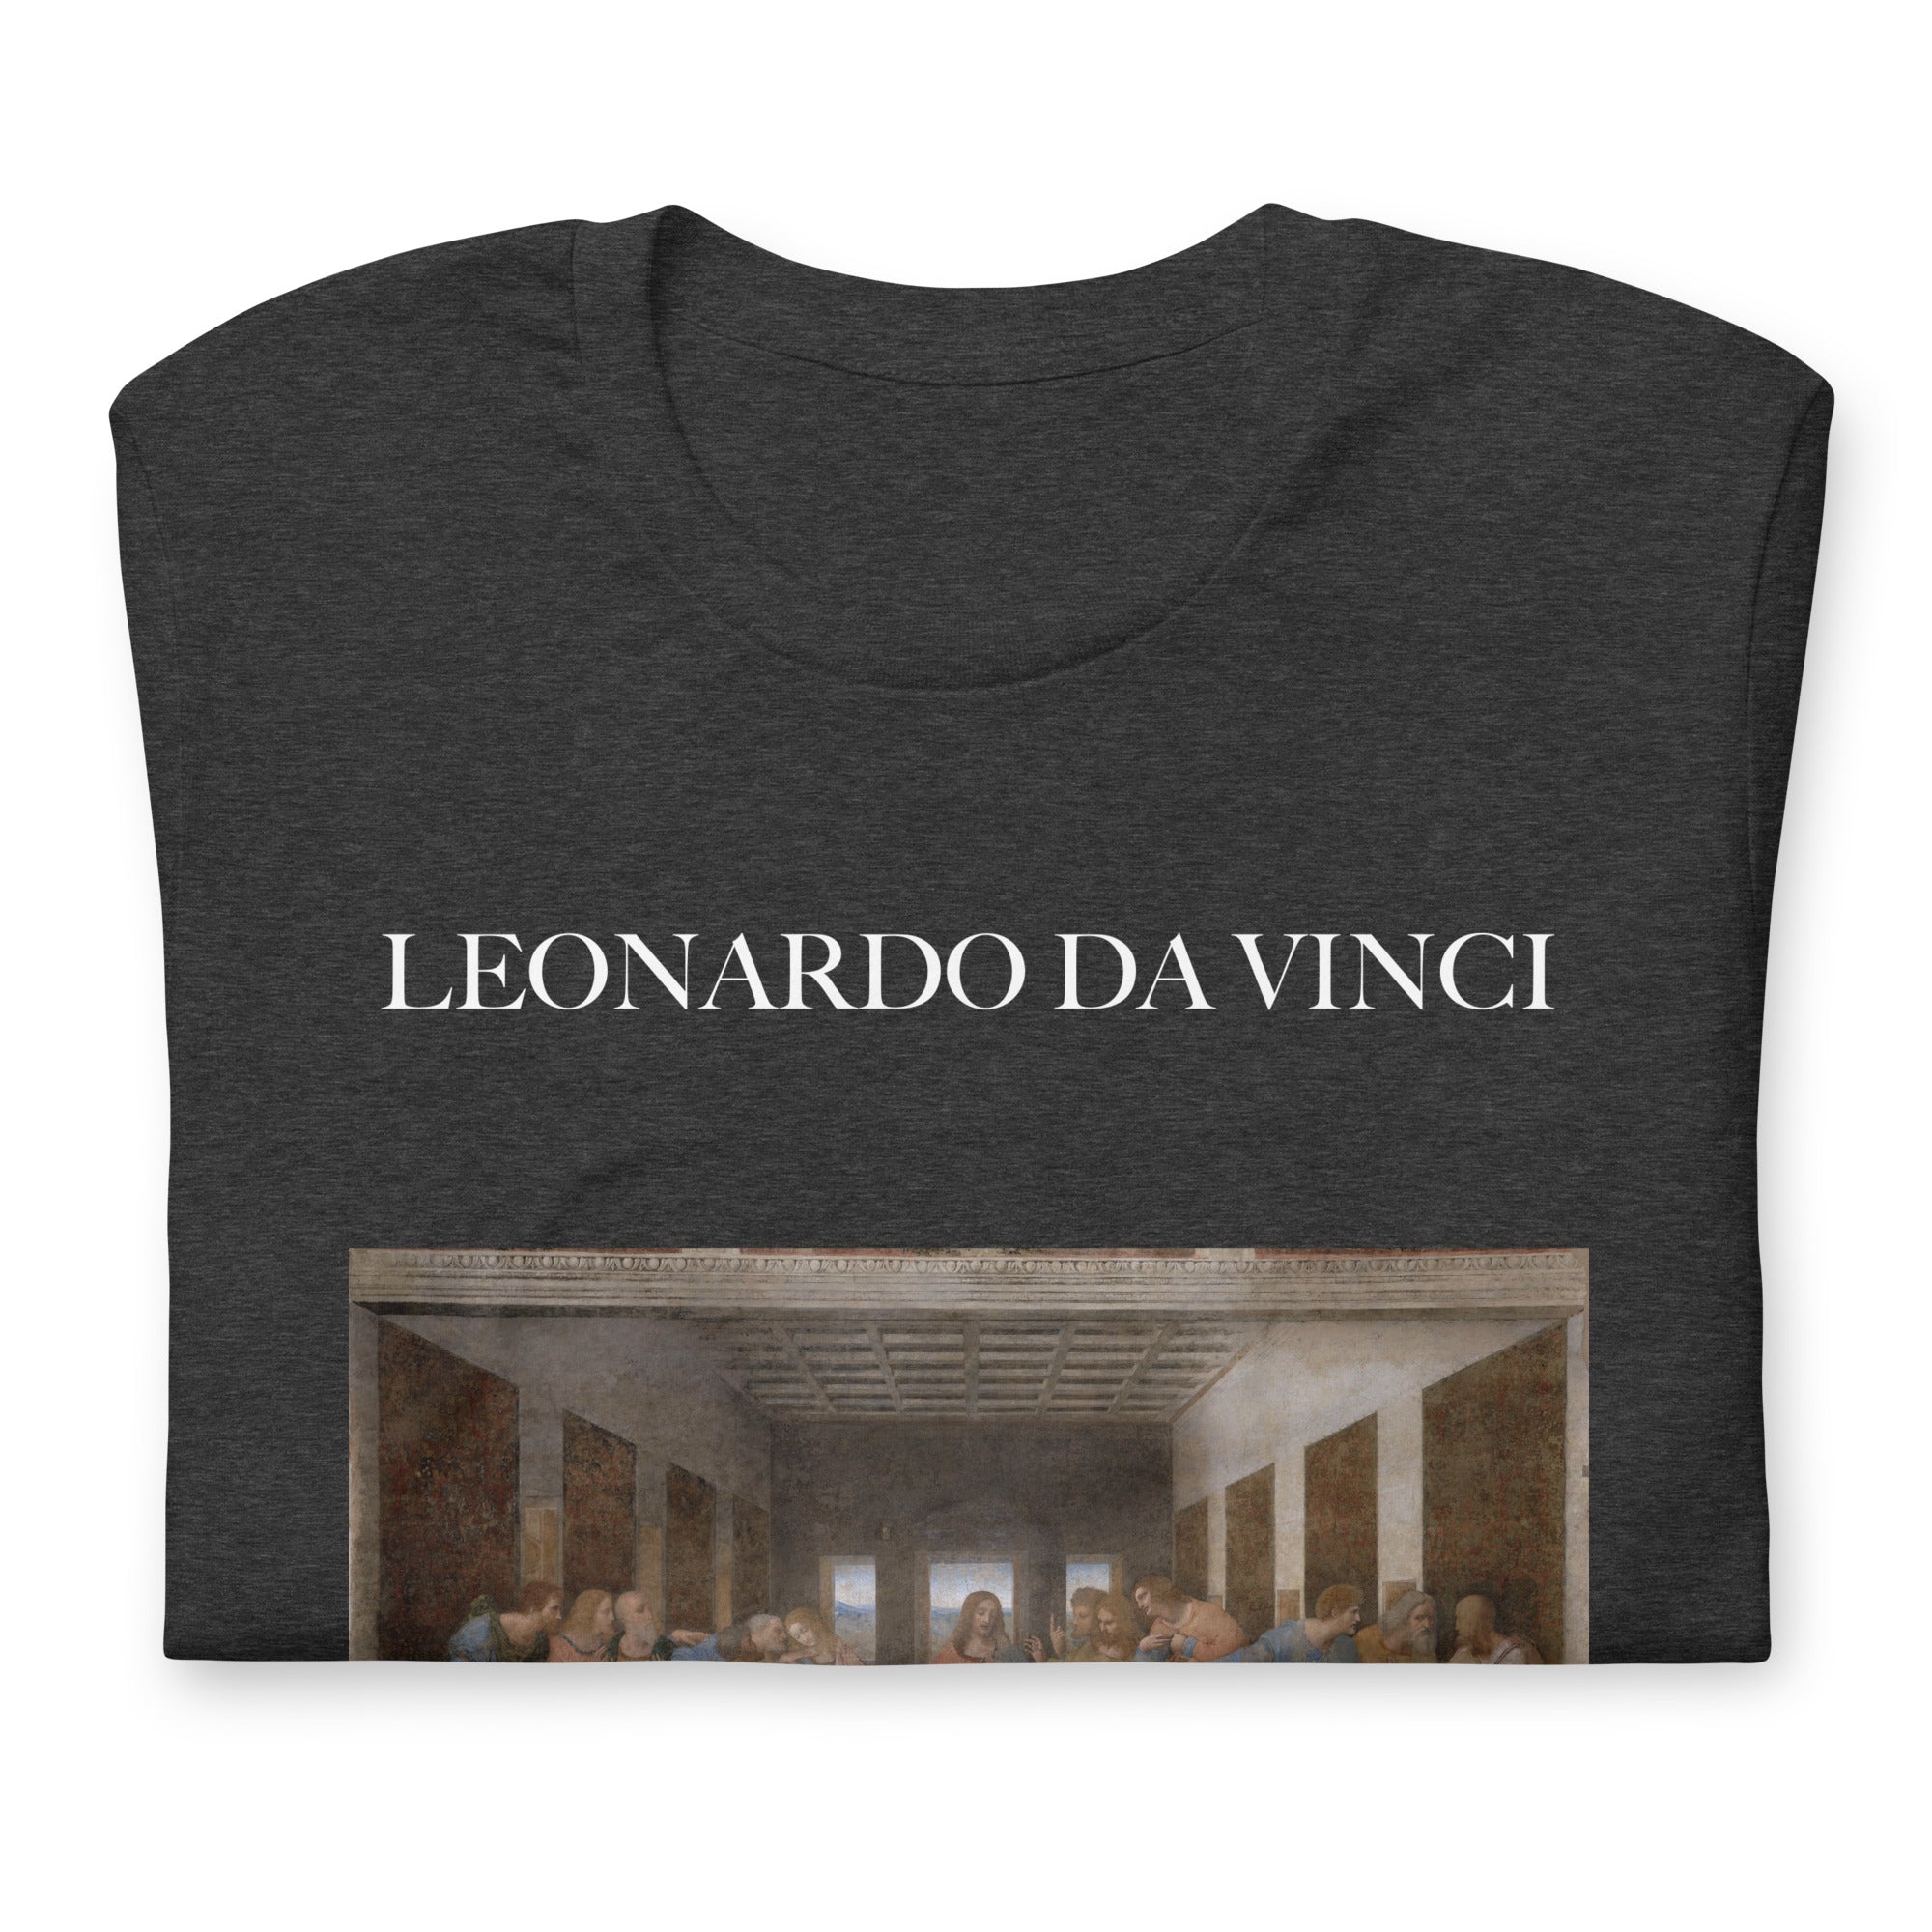 Leonardo da Vinci T-Shirt mit berühmtem Gemälde „Das letzte Abendmahl“ | Unisex-T-Shirt mit klassischer Kunst